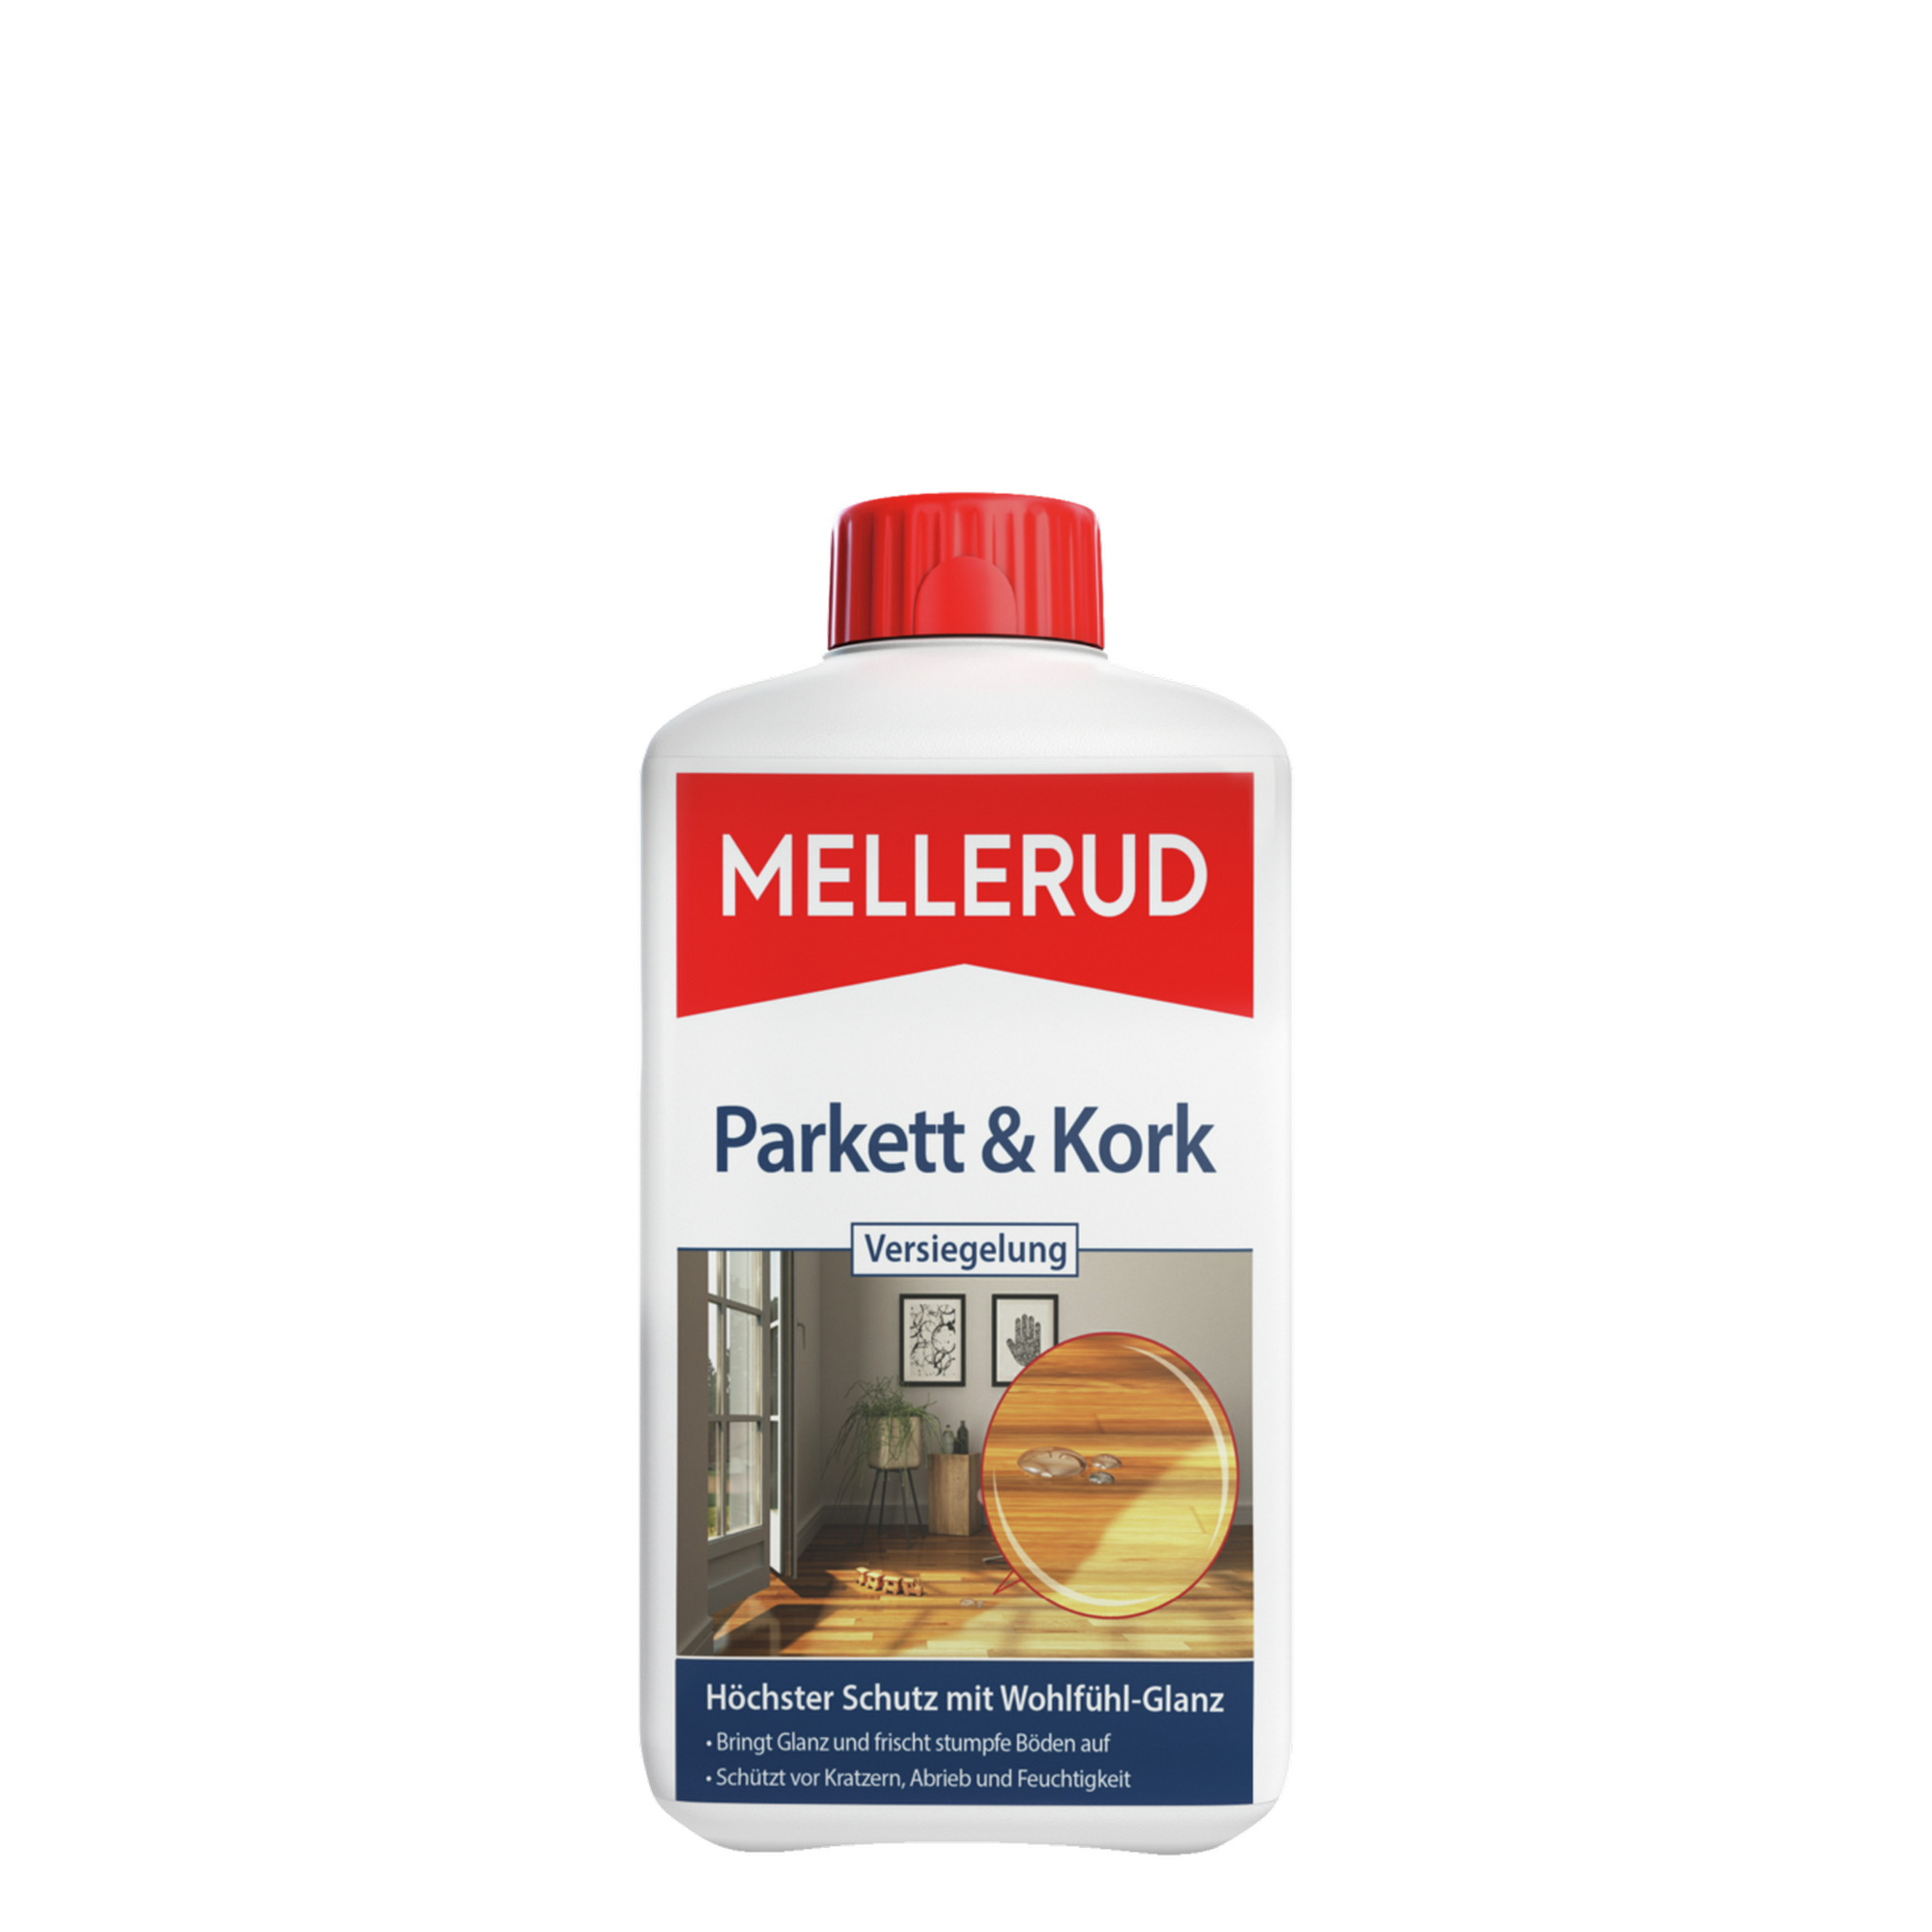 Parkett- und Kork-Versiegelung 1000 ml + product picture